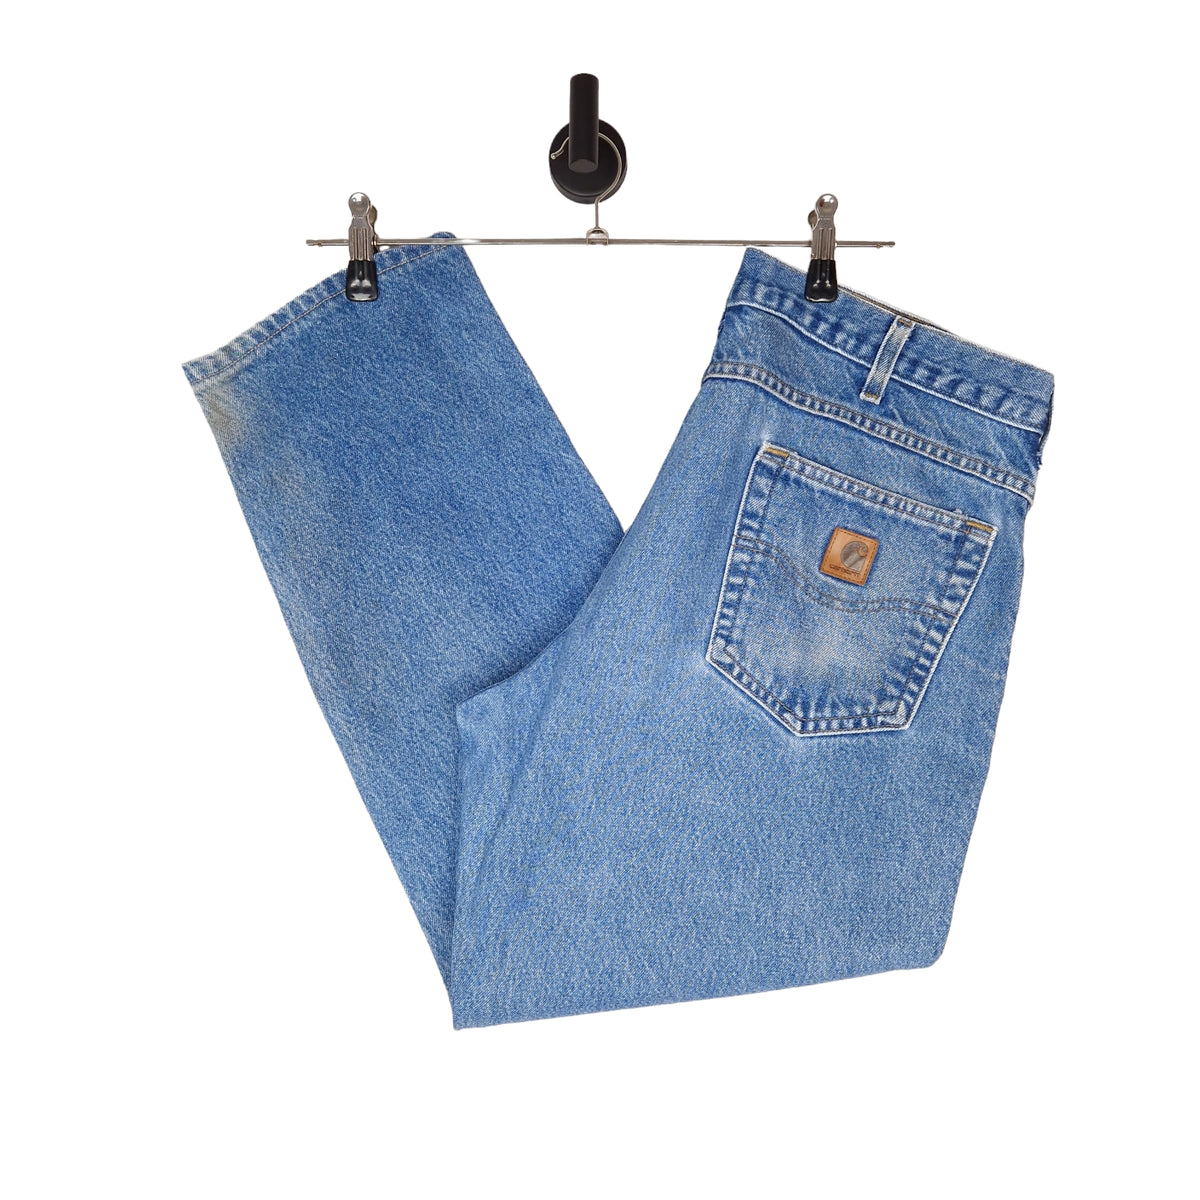 Carhartt Denim Jeans - Size W36 L30